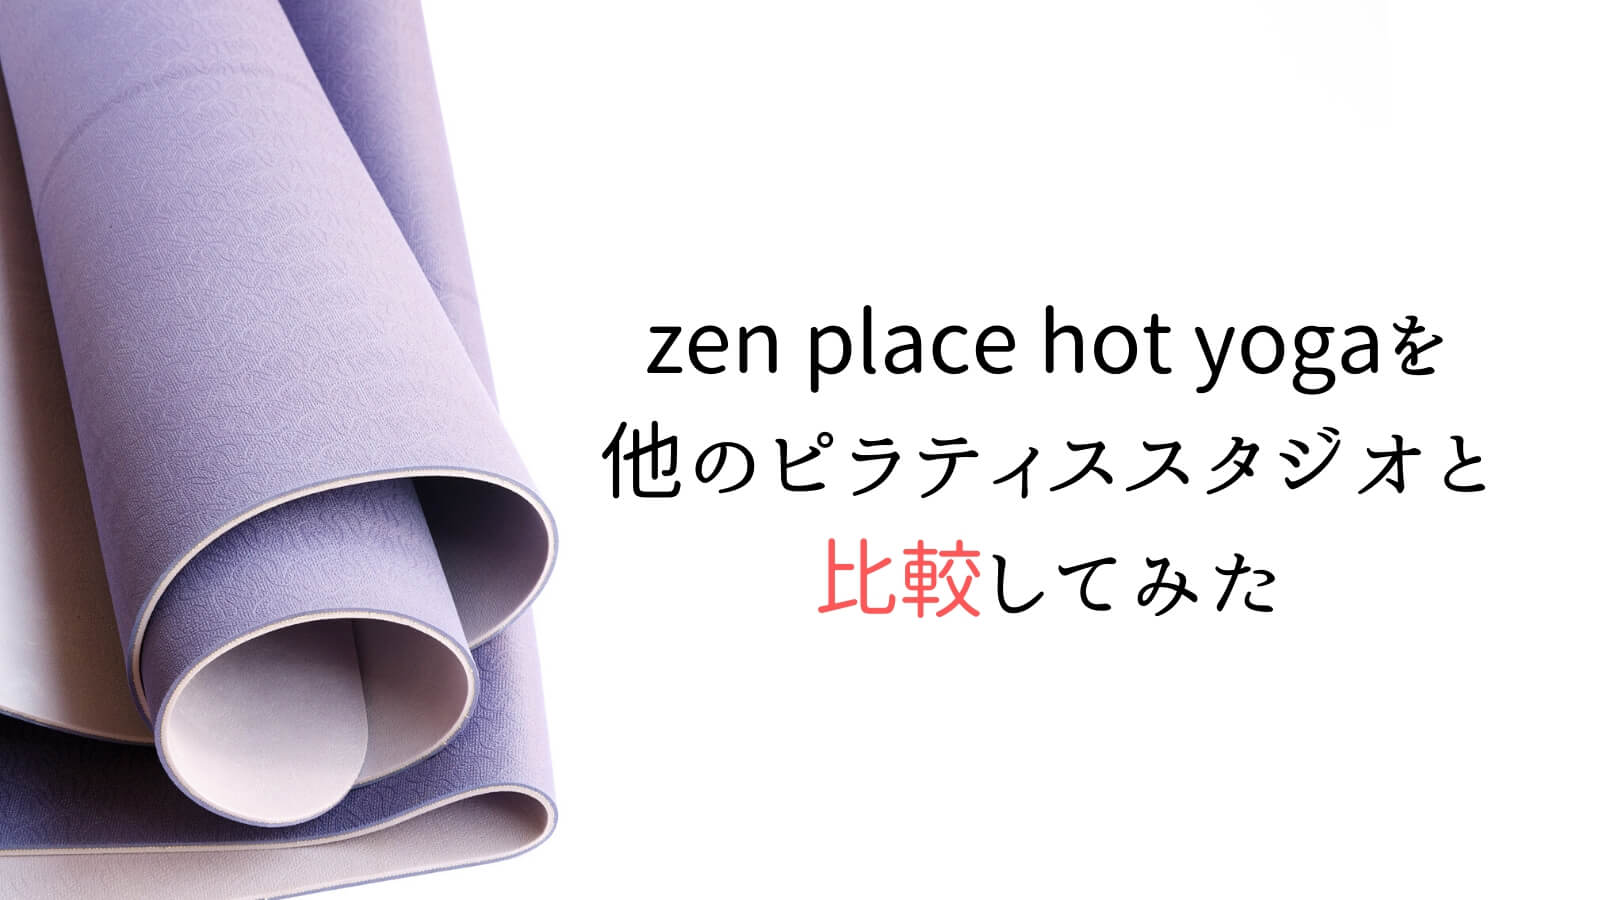 zen place hot yogaを他のヨガスタジオと比較してみた